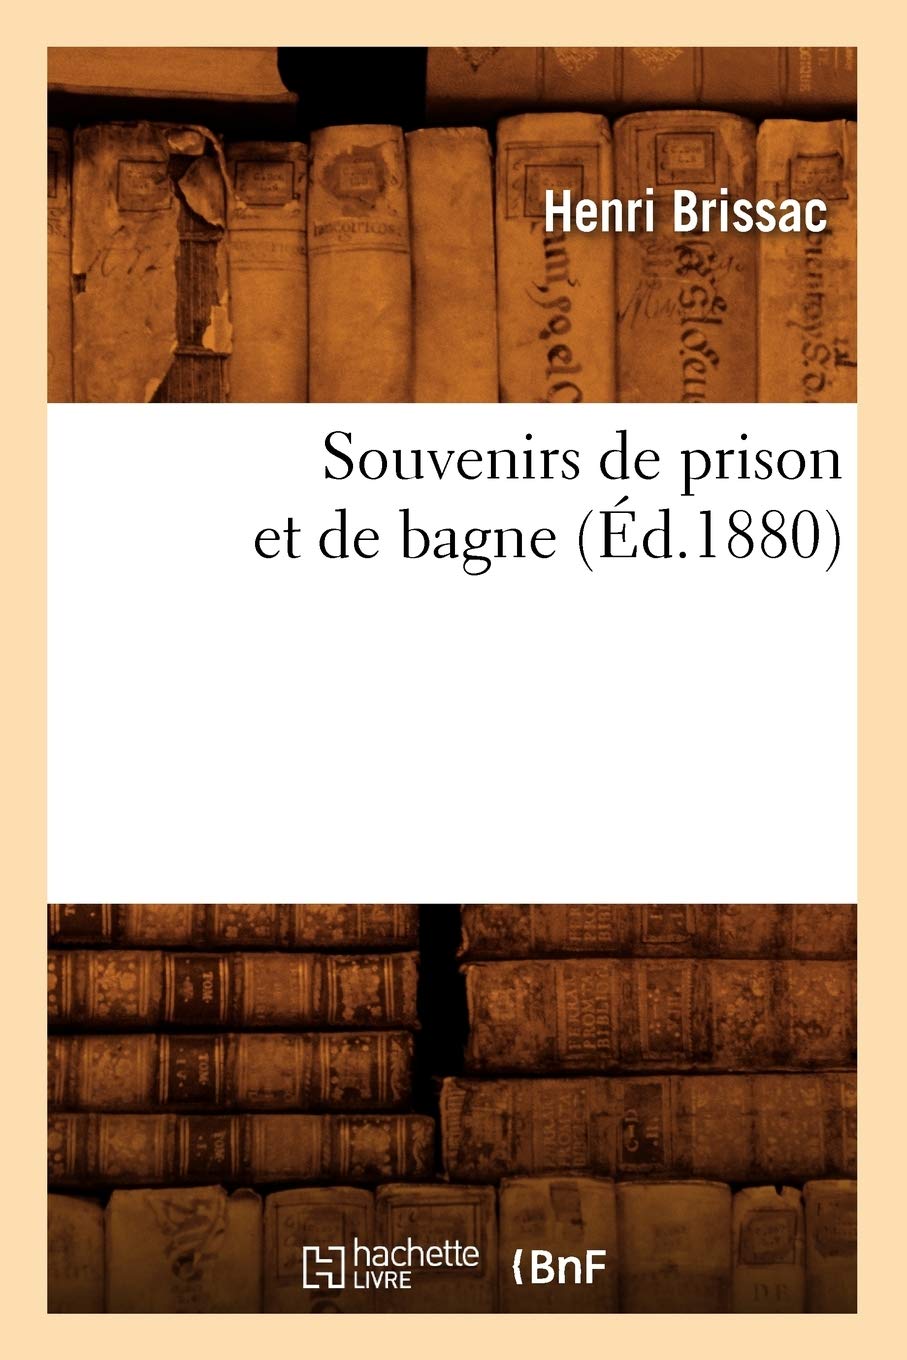 Henri Brissac : Souvenirs de prison et de bagne (édition de 1881)